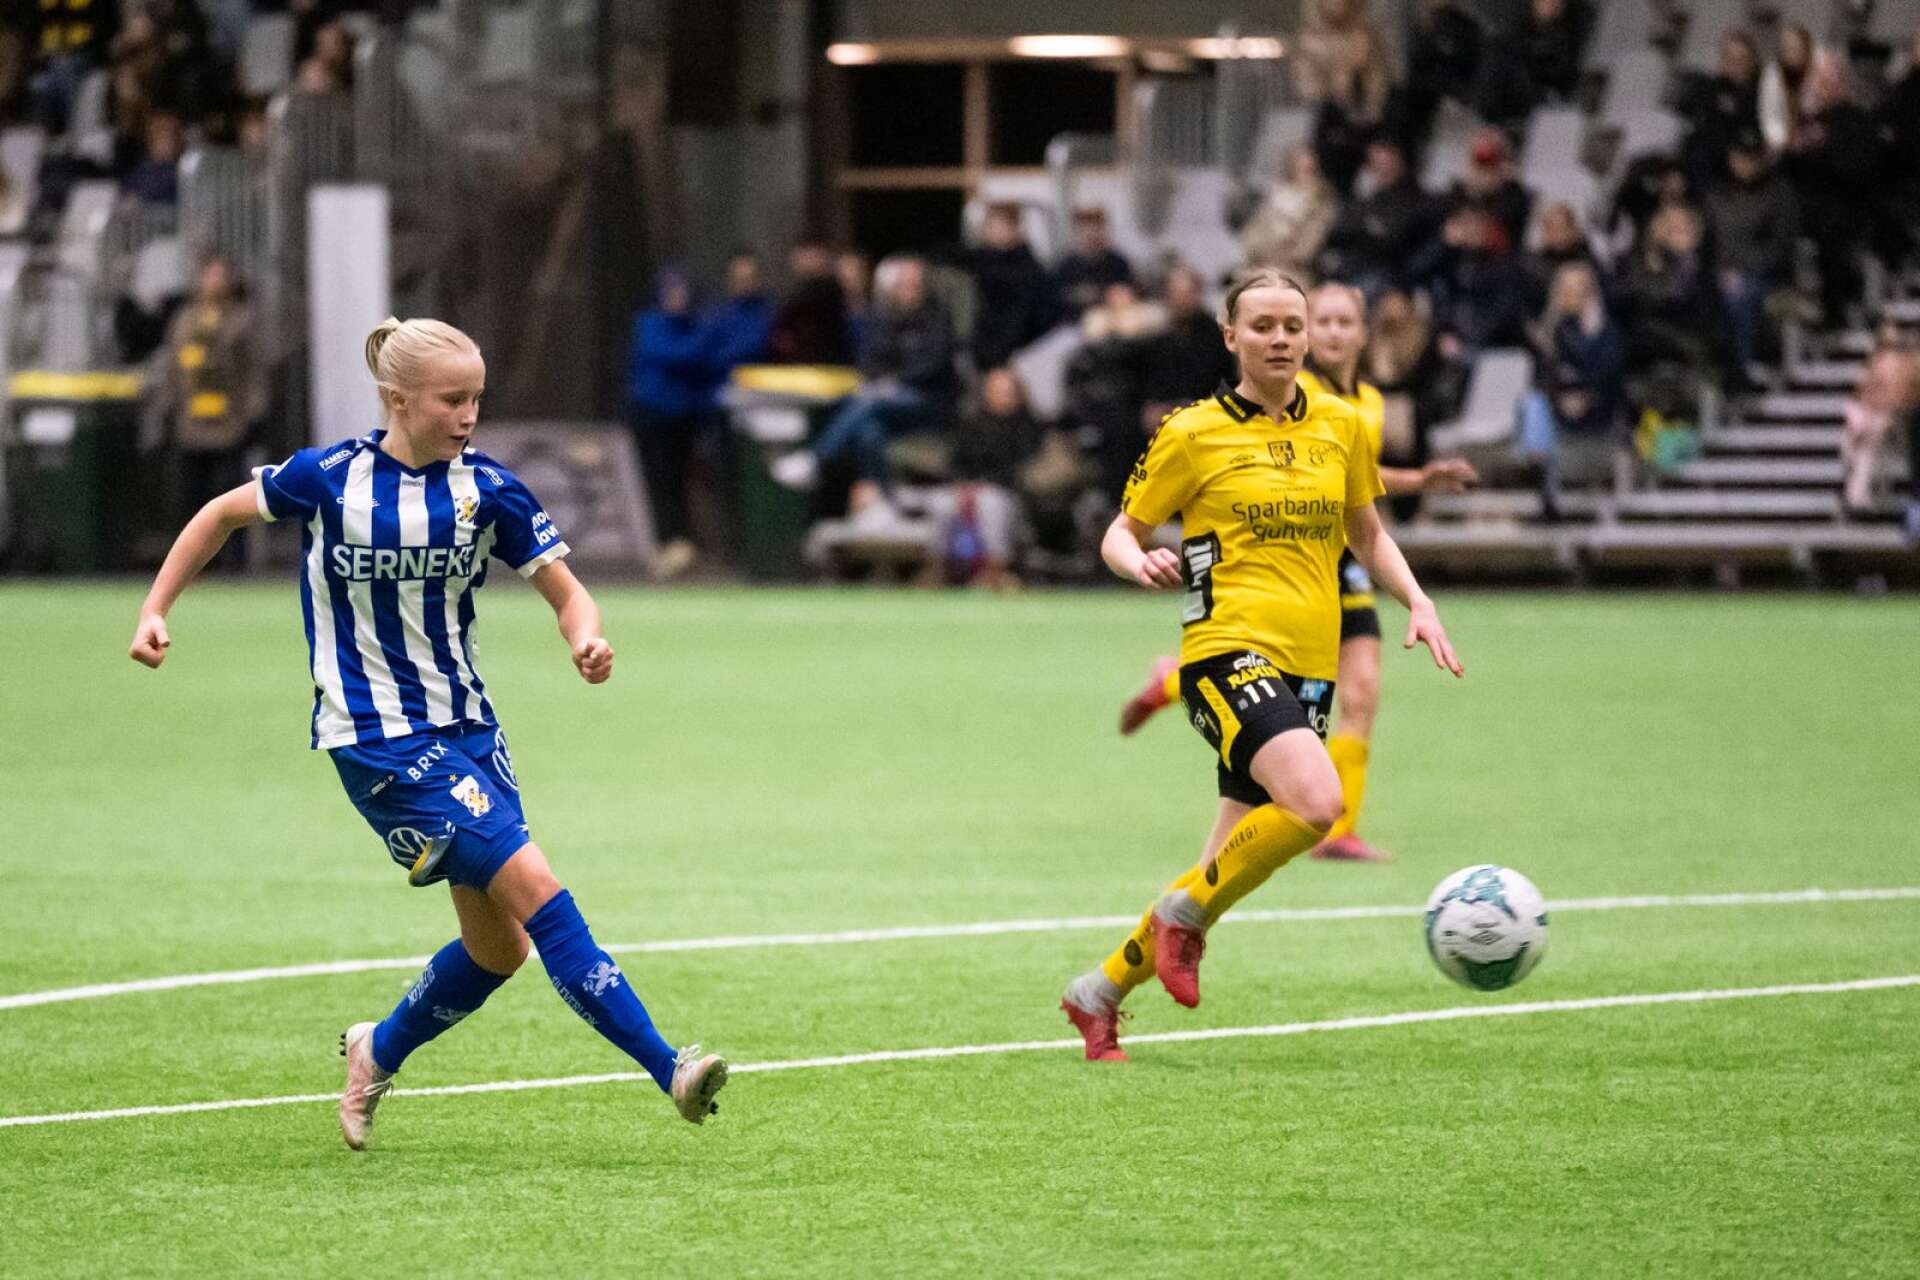 Åmålsspelaren Ida Kjellman skjuter mål för IFK Göteborg under träningsmatchen mot Elfsborg i Borås i lördag. 